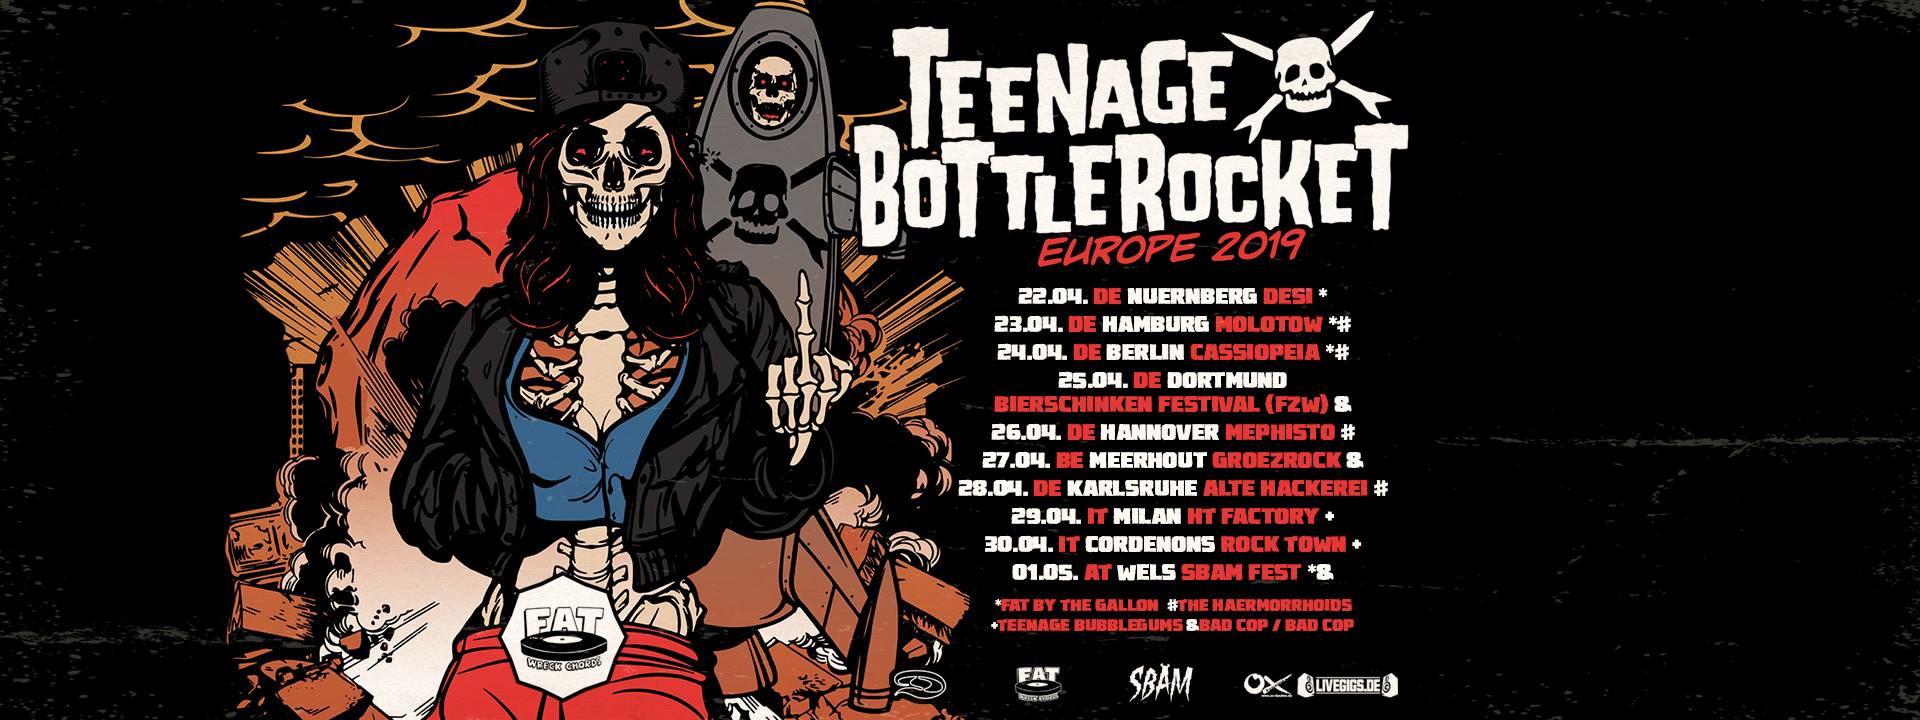 Teenage Bottlerocket - Tour 2019